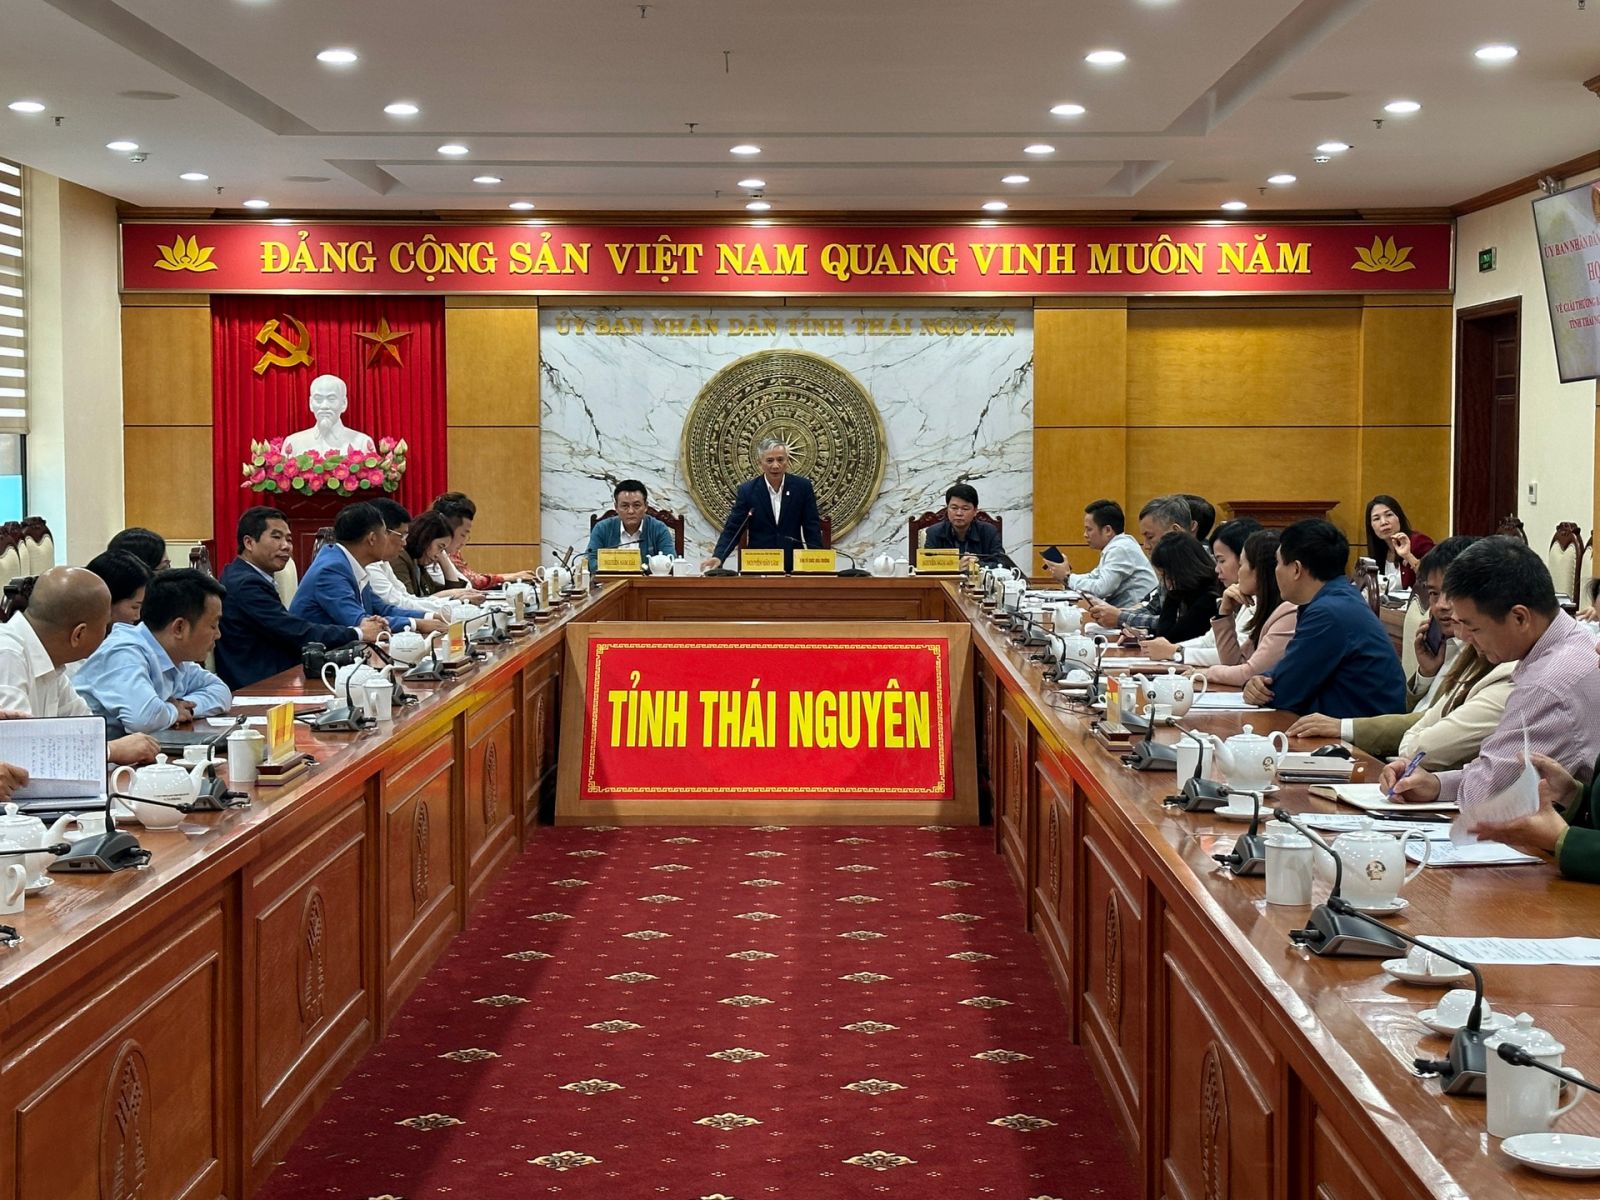 Buổi họp báo thông tin Giải báo chí Huỳnh Thúc Kháng lần thứ I. Ảnh: Toán Nguyễn.